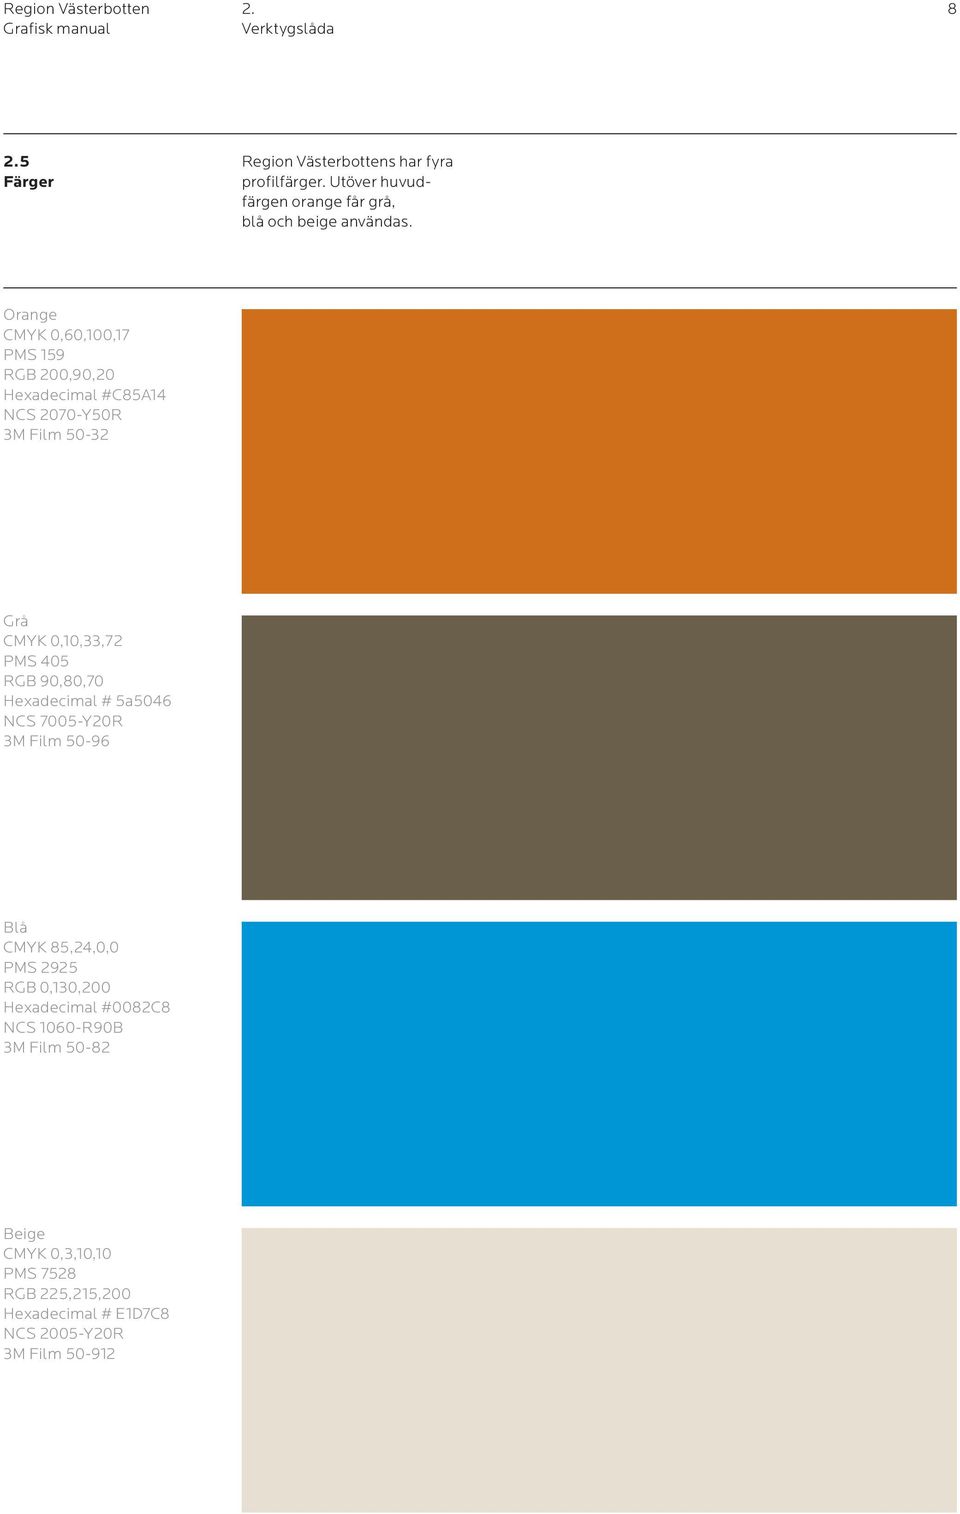 Orange CMYK 0,60,100,17 PMS 159 RGB 200,90,20 Hexadecimal #C85A14 NCS 2070-Y50R 3M Film 50-32 Grå CMYK 0,10,33,72 PMS 405 RGB